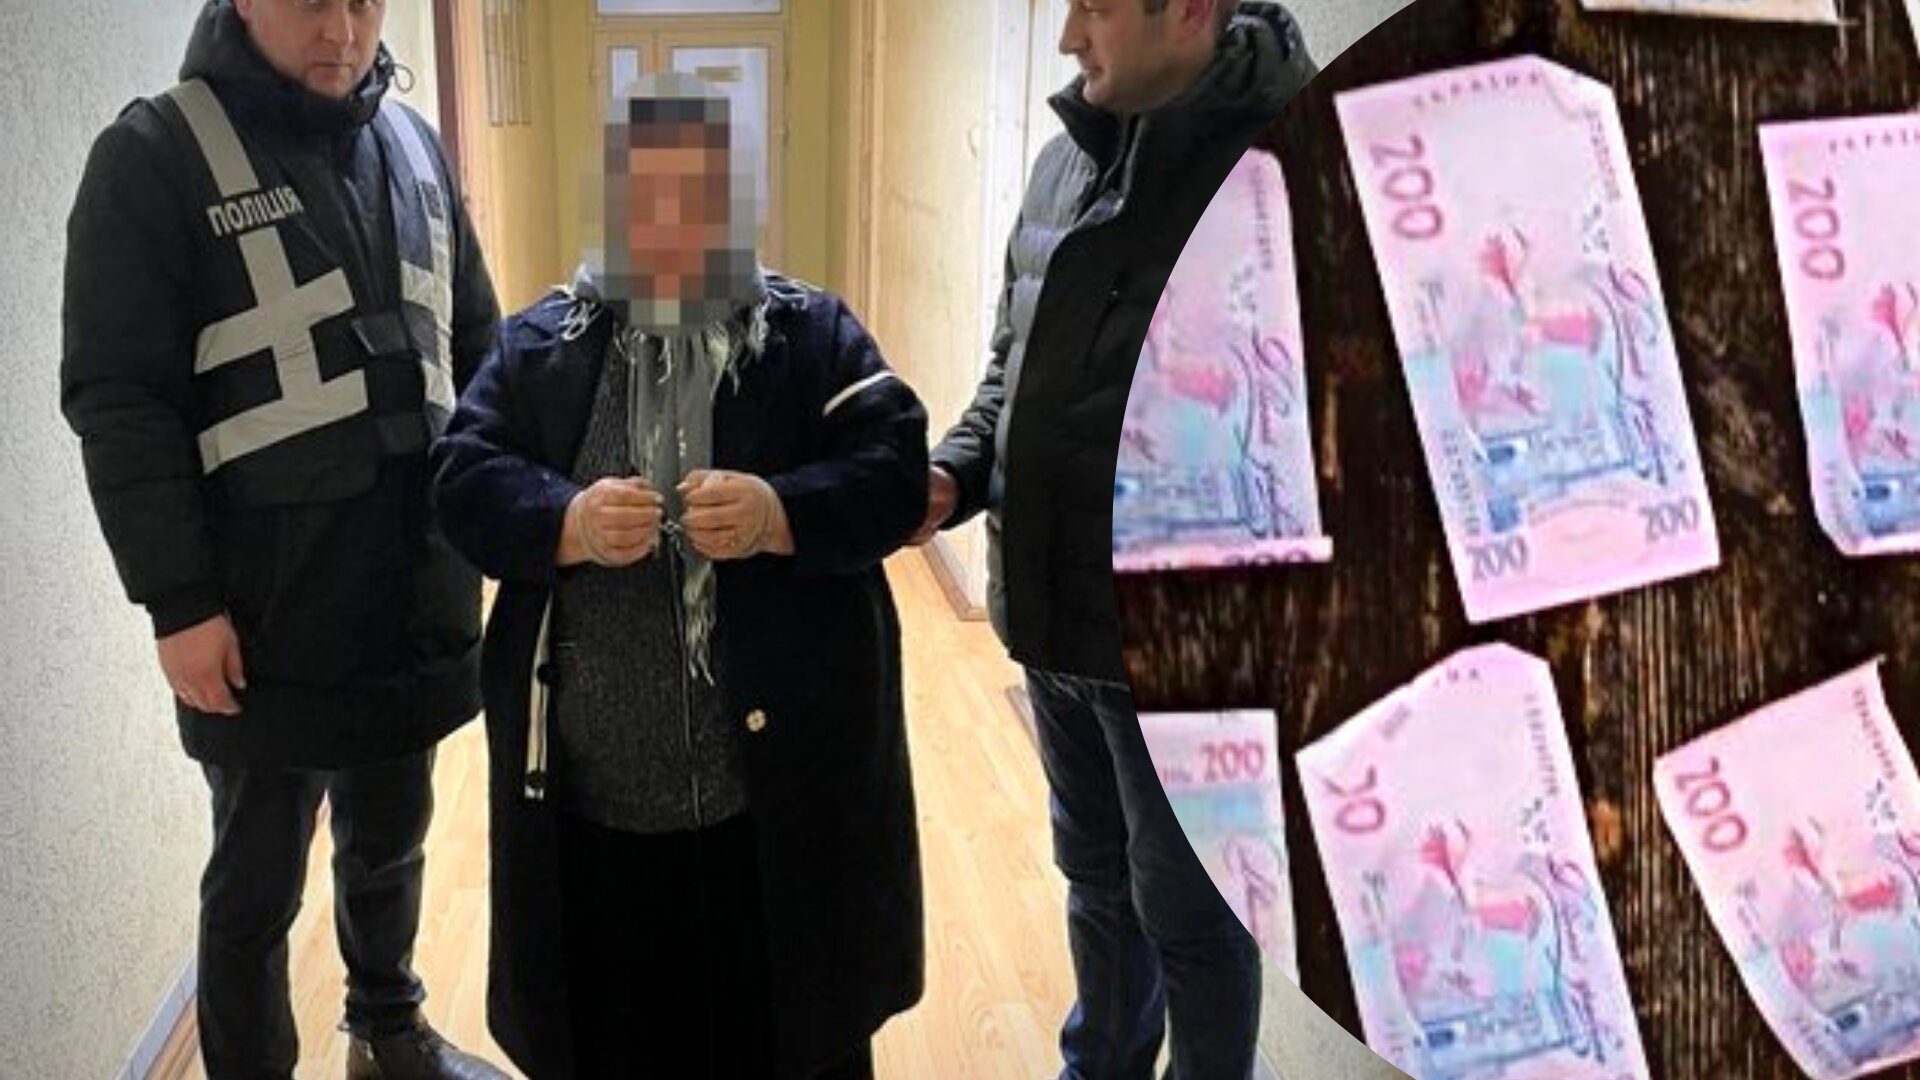 Поліцейські затримали 57-річну жительку села Великий Дорошів на Львівщині за торгівлю наркотиками. Жінка продавала наркотики клієнтам прямо у своєму будинку.
